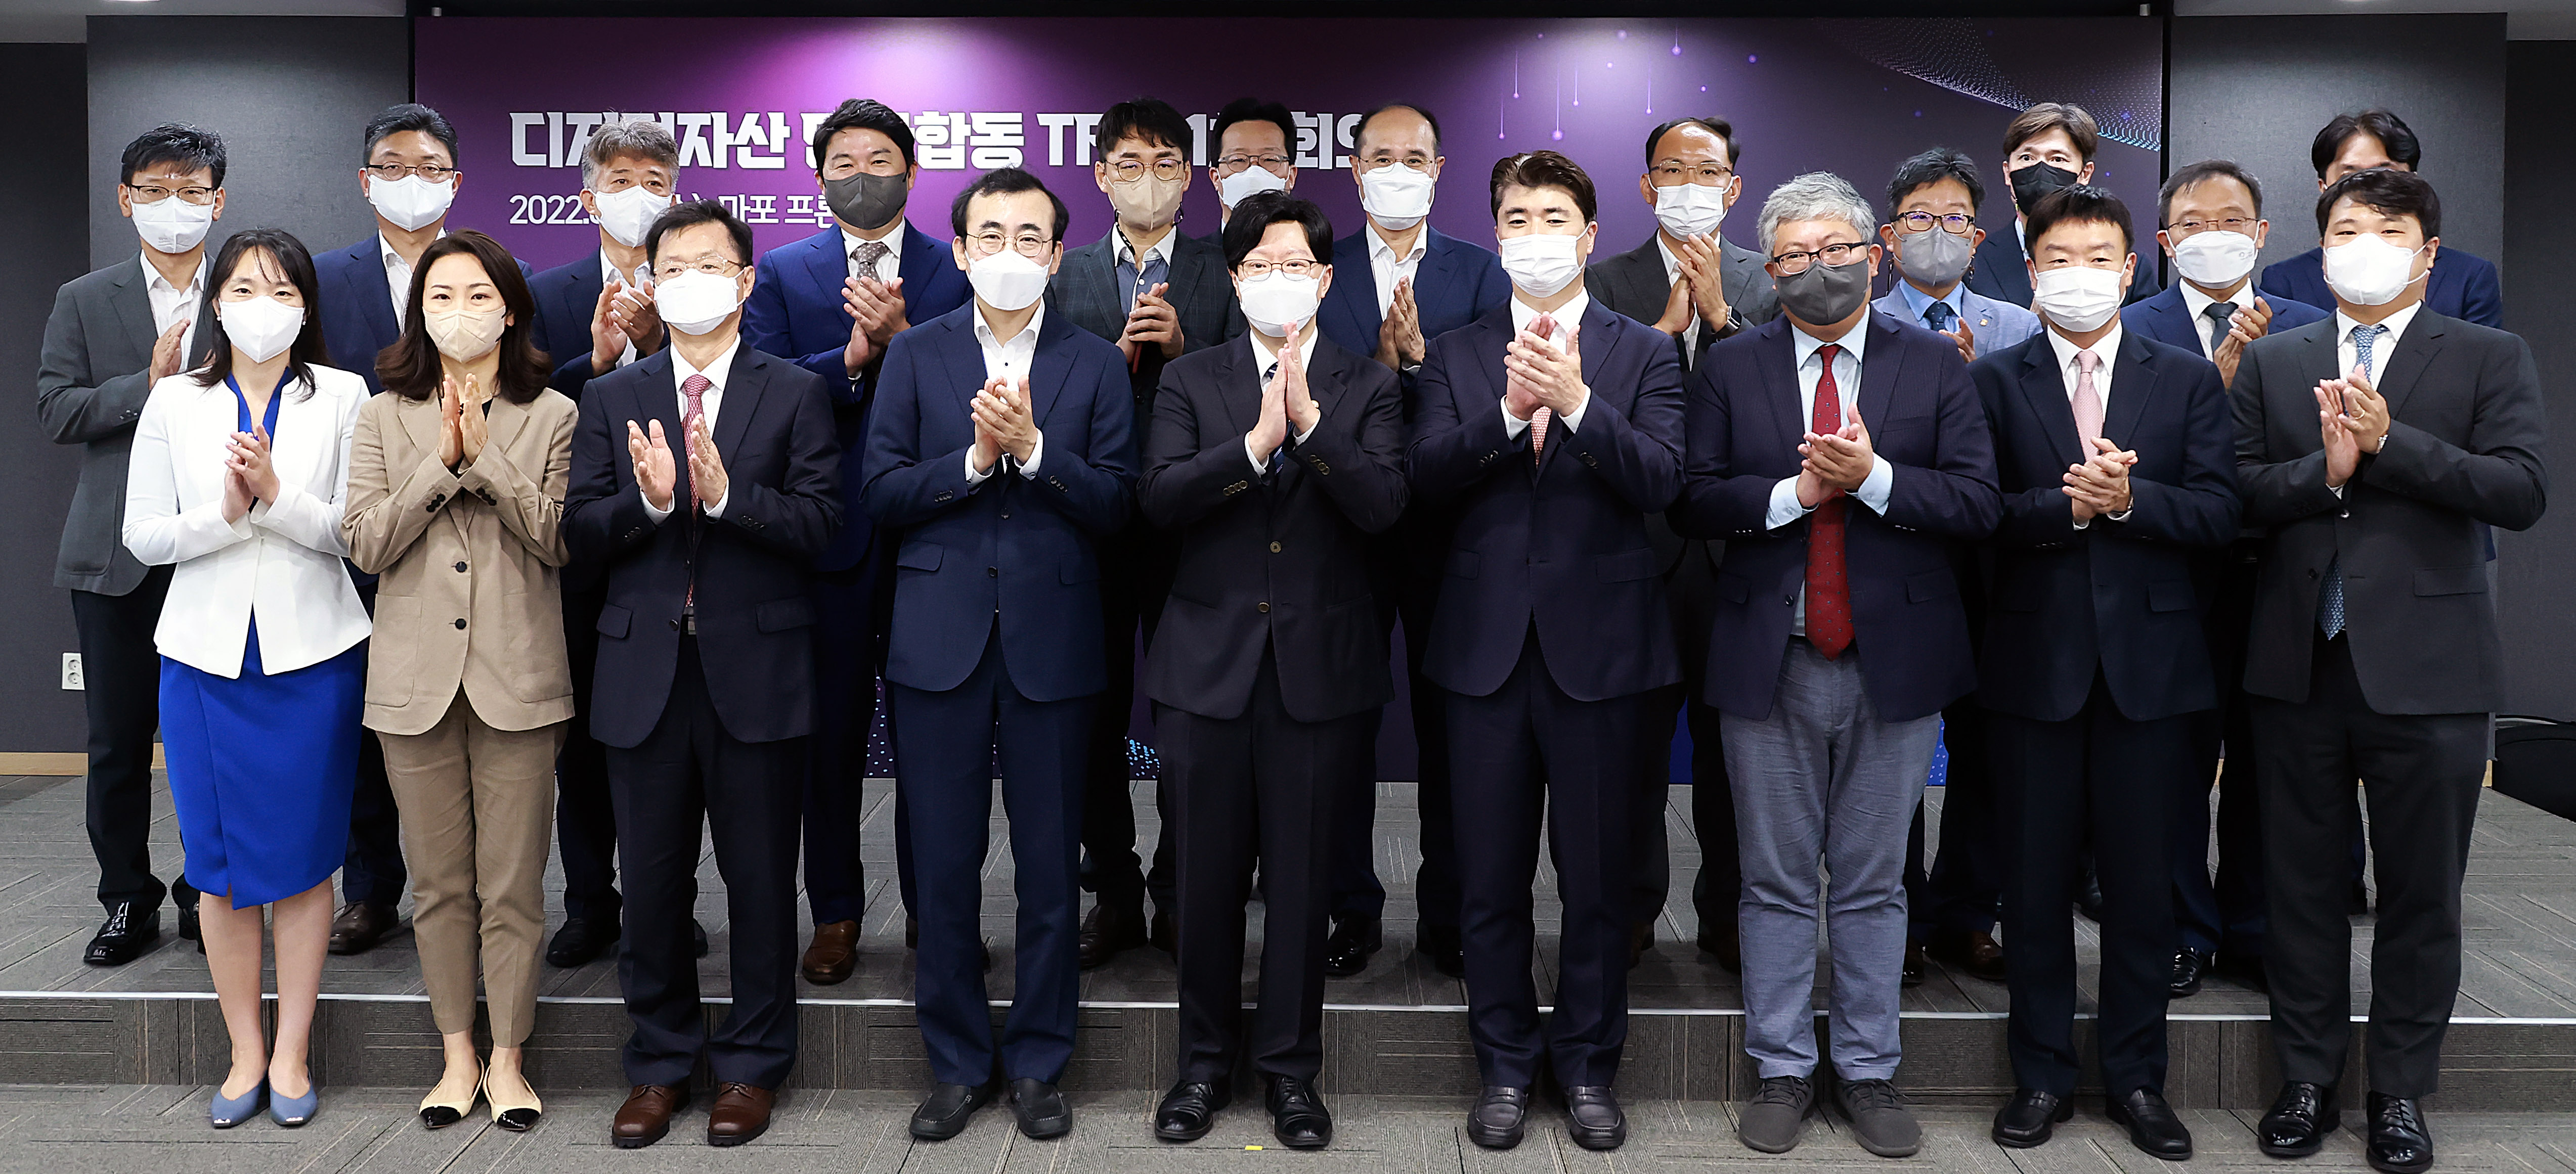 김소영(왼쪽 다섯번째) 금융위원회 부위원장이 17일 서울 마포구 마포 프론트원에서 개최된 디지털자산 민·관합동 태스크포스 출범 및 1차 회의에서 참석자들과 기념촬영을 하고 있다.   